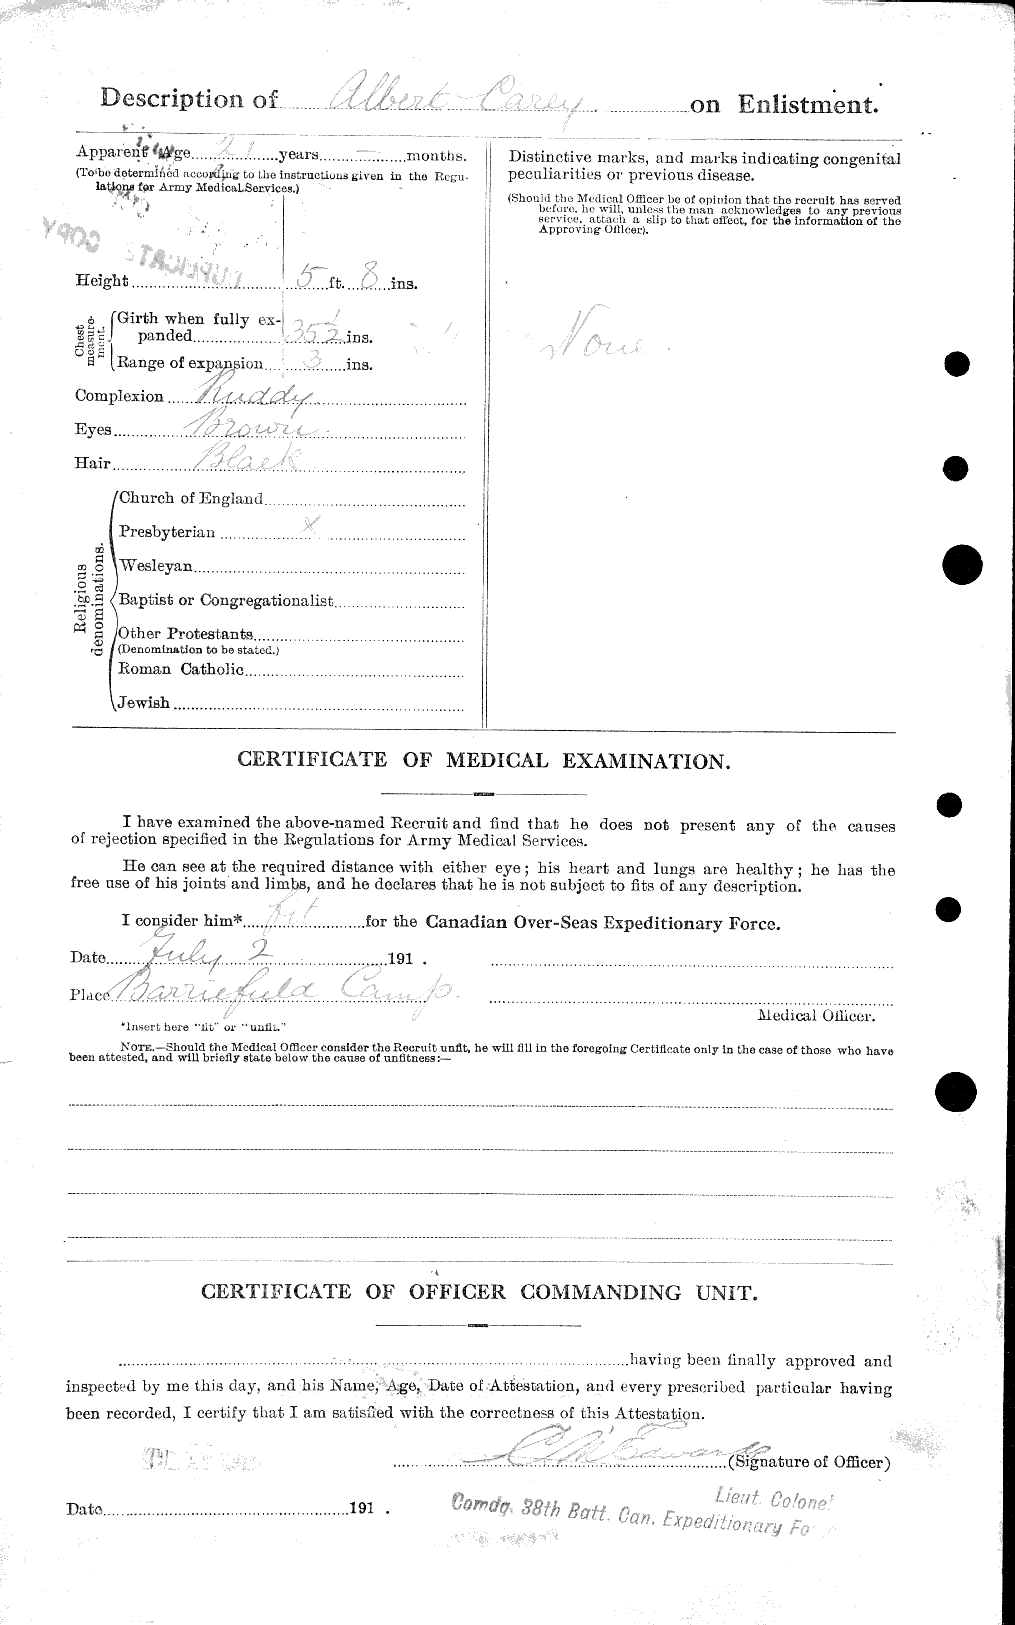 Dossiers du Personnel de la Première Guerre mondiale - CEC 009349b